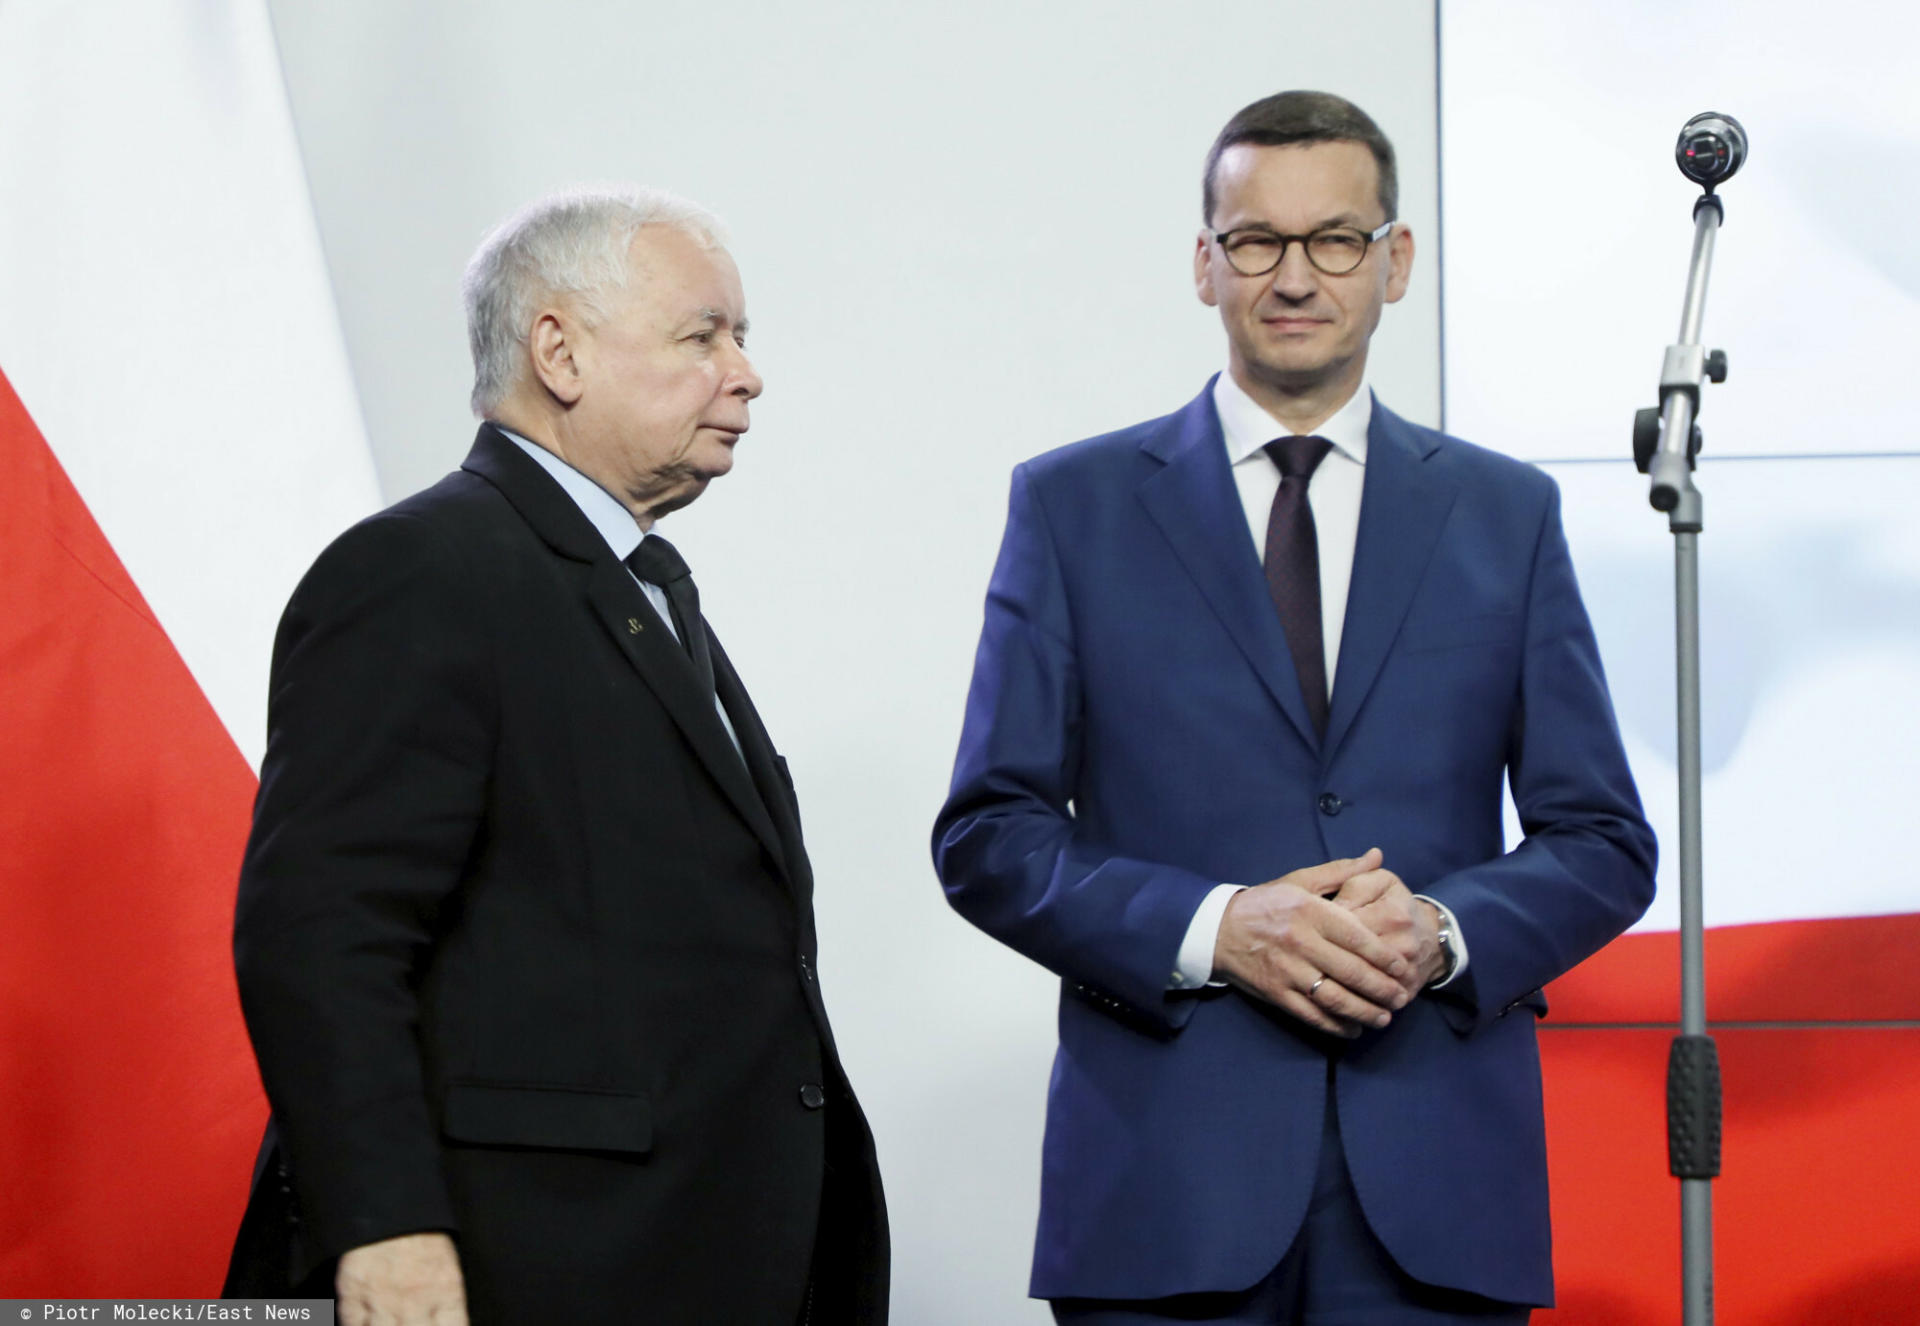 Według nieoficjalnych doniesień, Jarosław Kaczyński zastanawia się nad zmianą premiera. Zmiana miałaby nastąpić po najbliższych wyborach. 